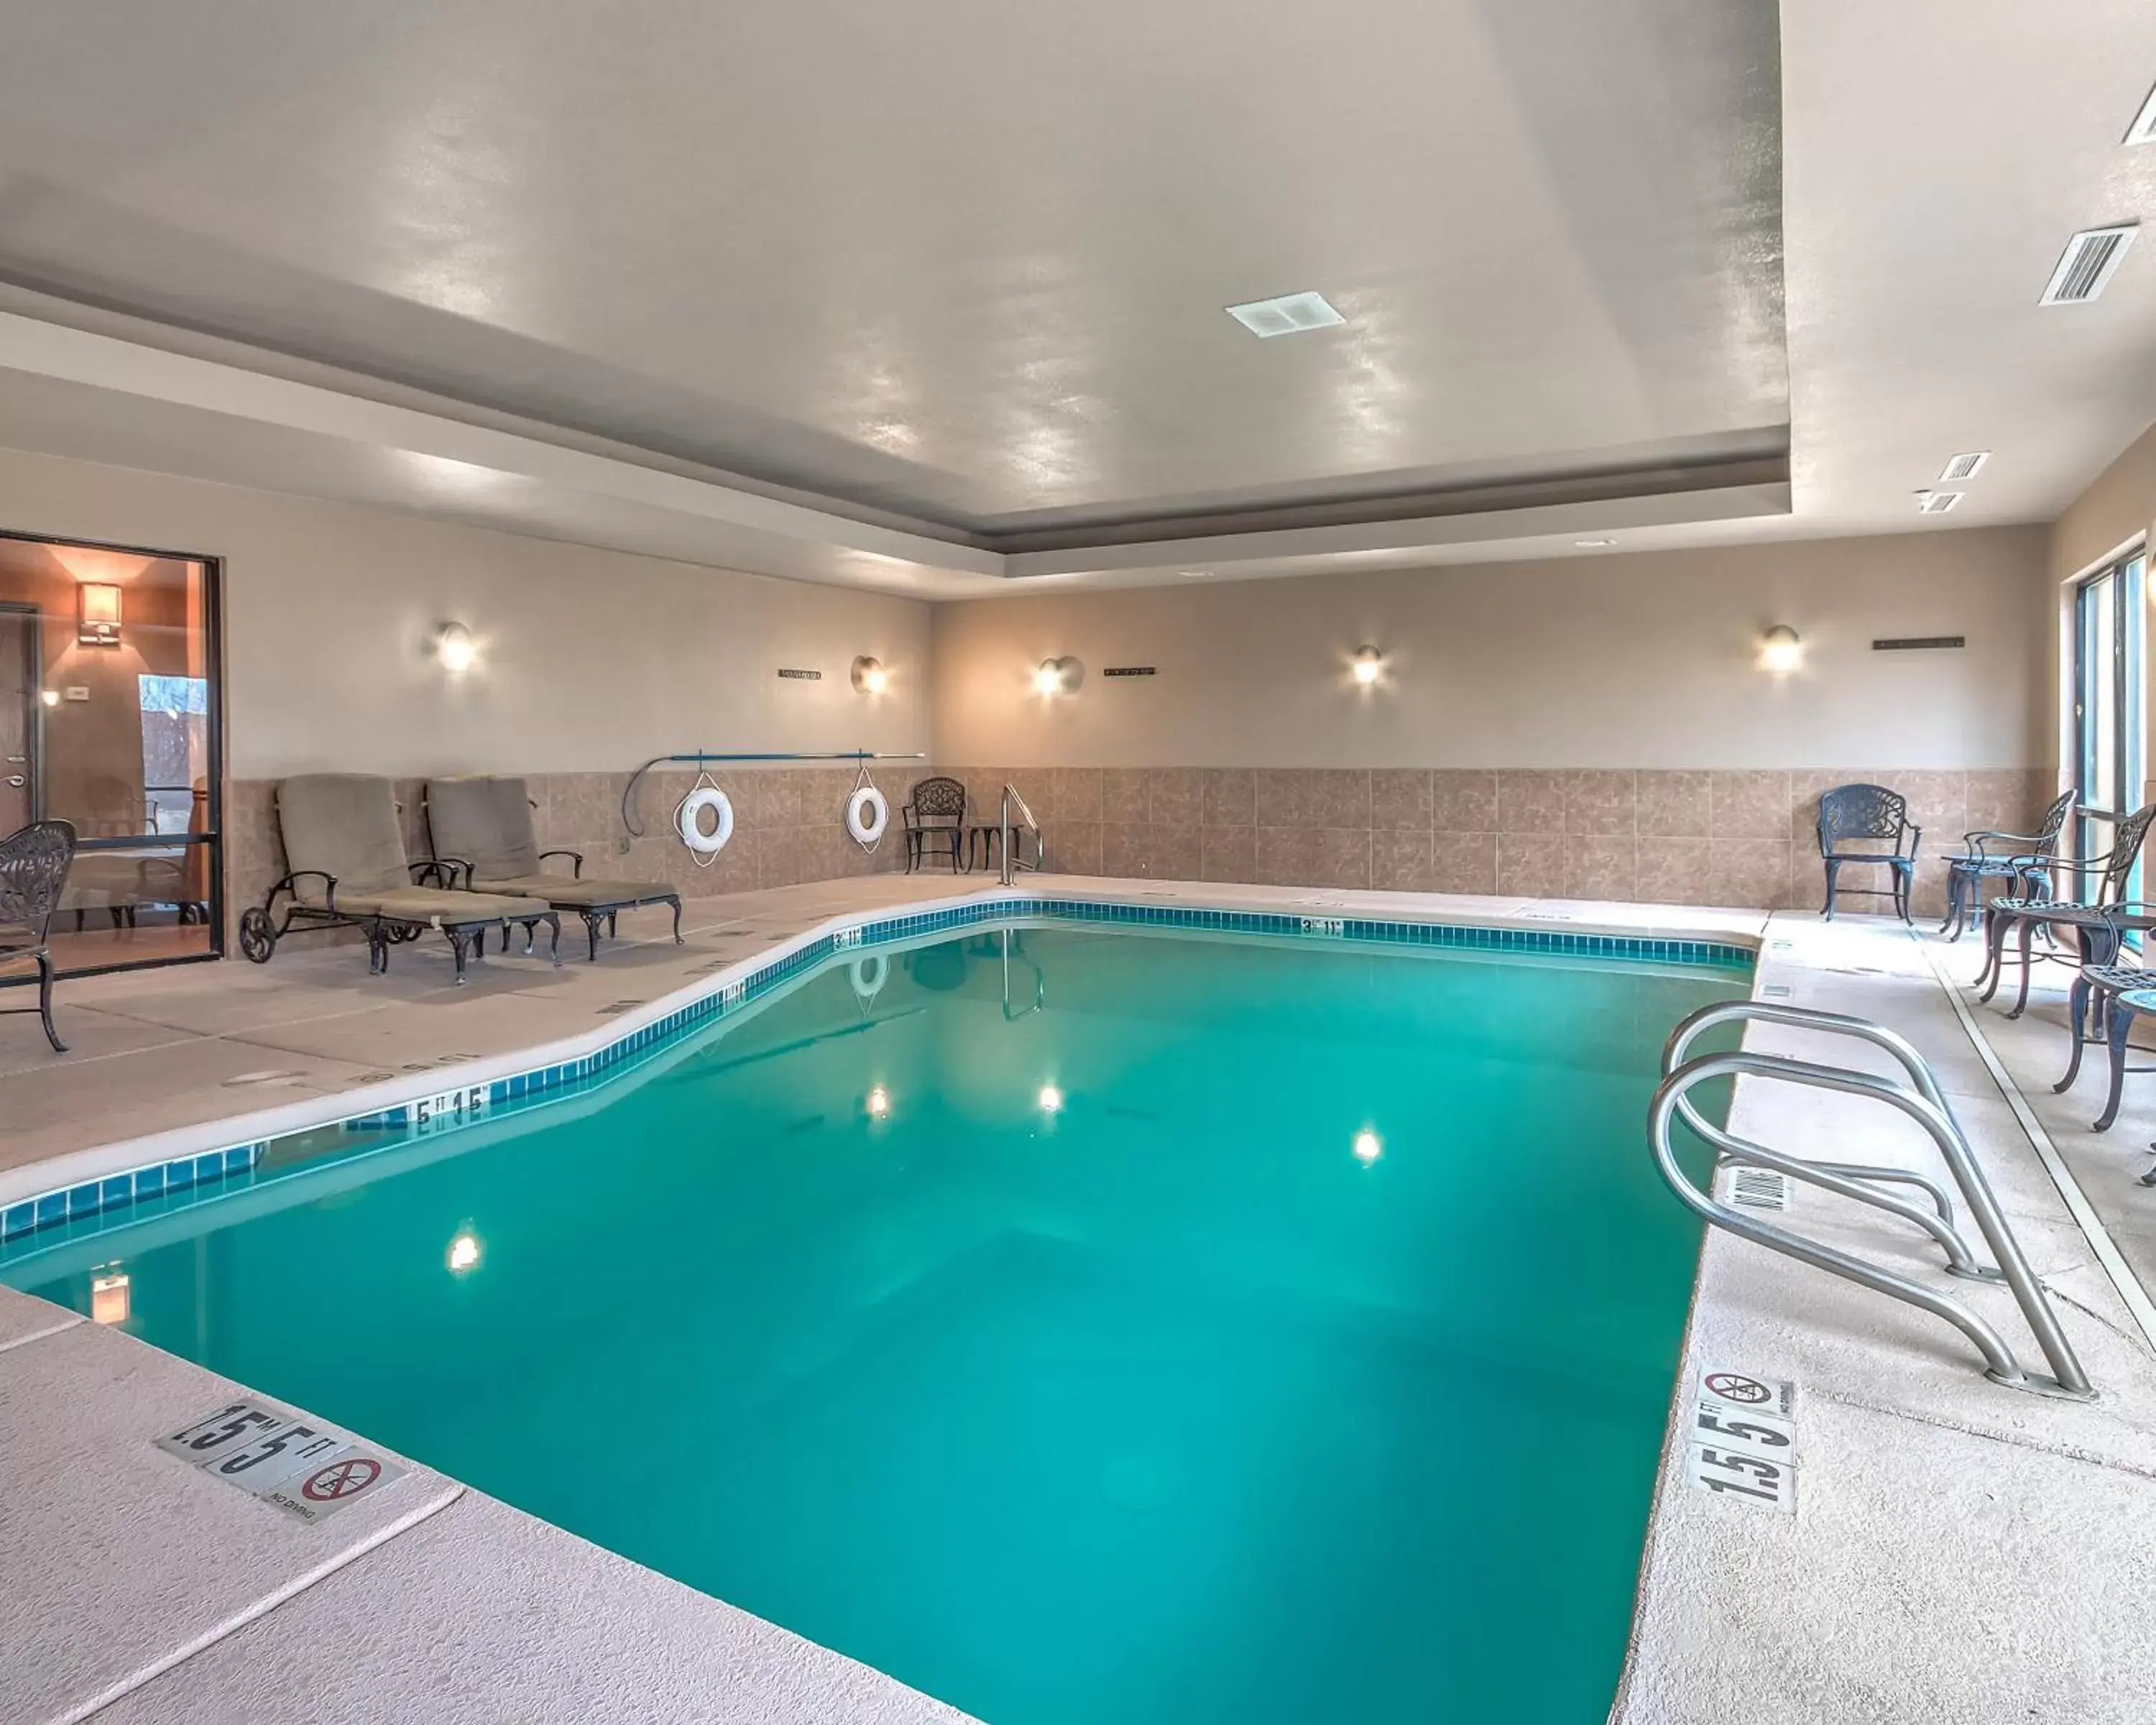 Swimming Pool in MainStay Suites Hobbs